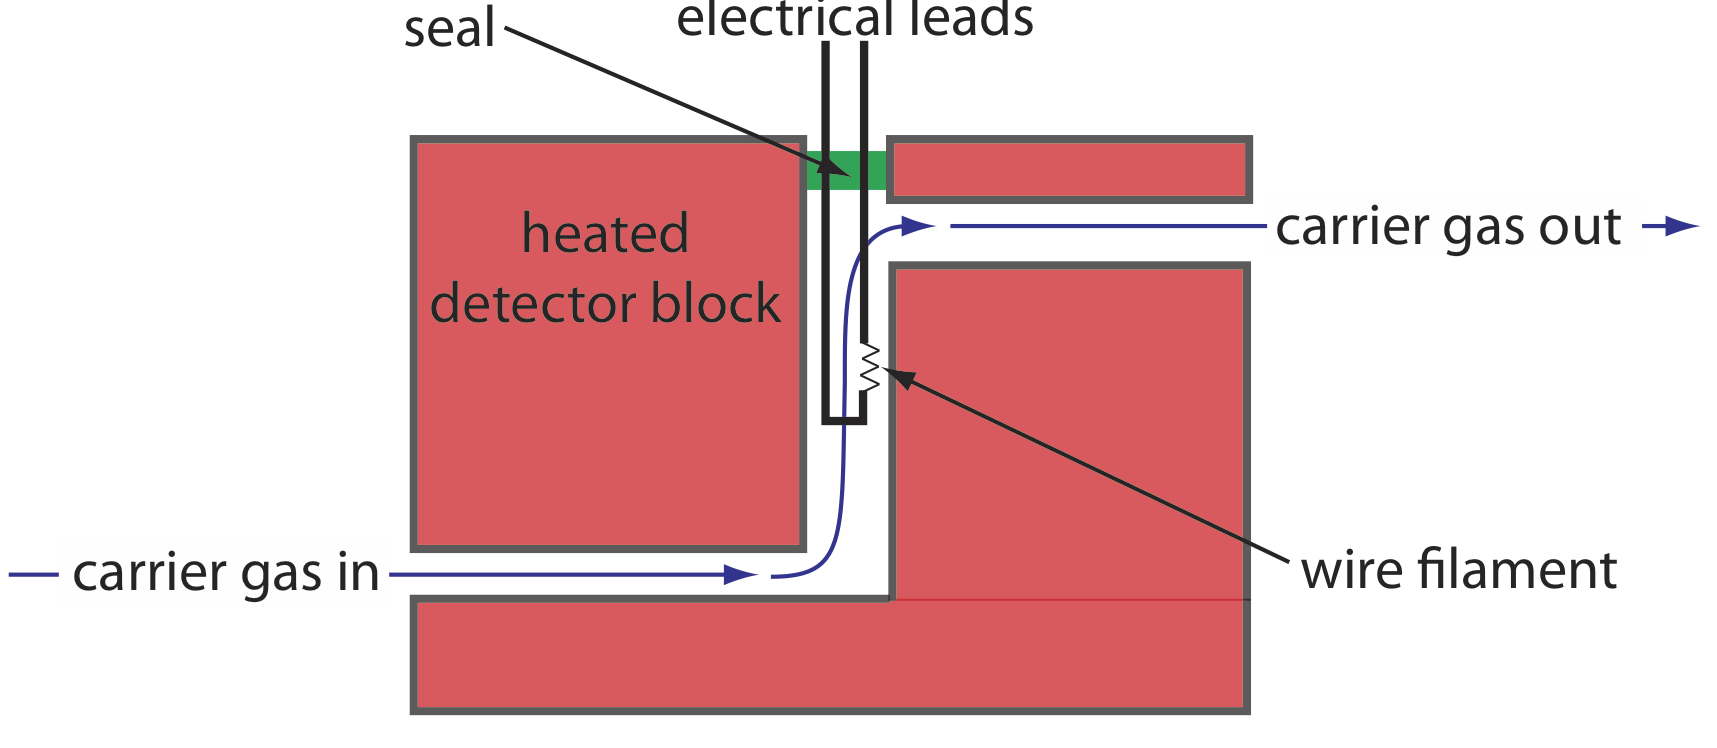 El detector de conductividad térmica consiste en que el gas portador se bombea a un bloque detector calentado con un sello y cables eléctricos, que tienen un filamento de alambre en ellos, y luego el gas portador fluye hacia afuera.